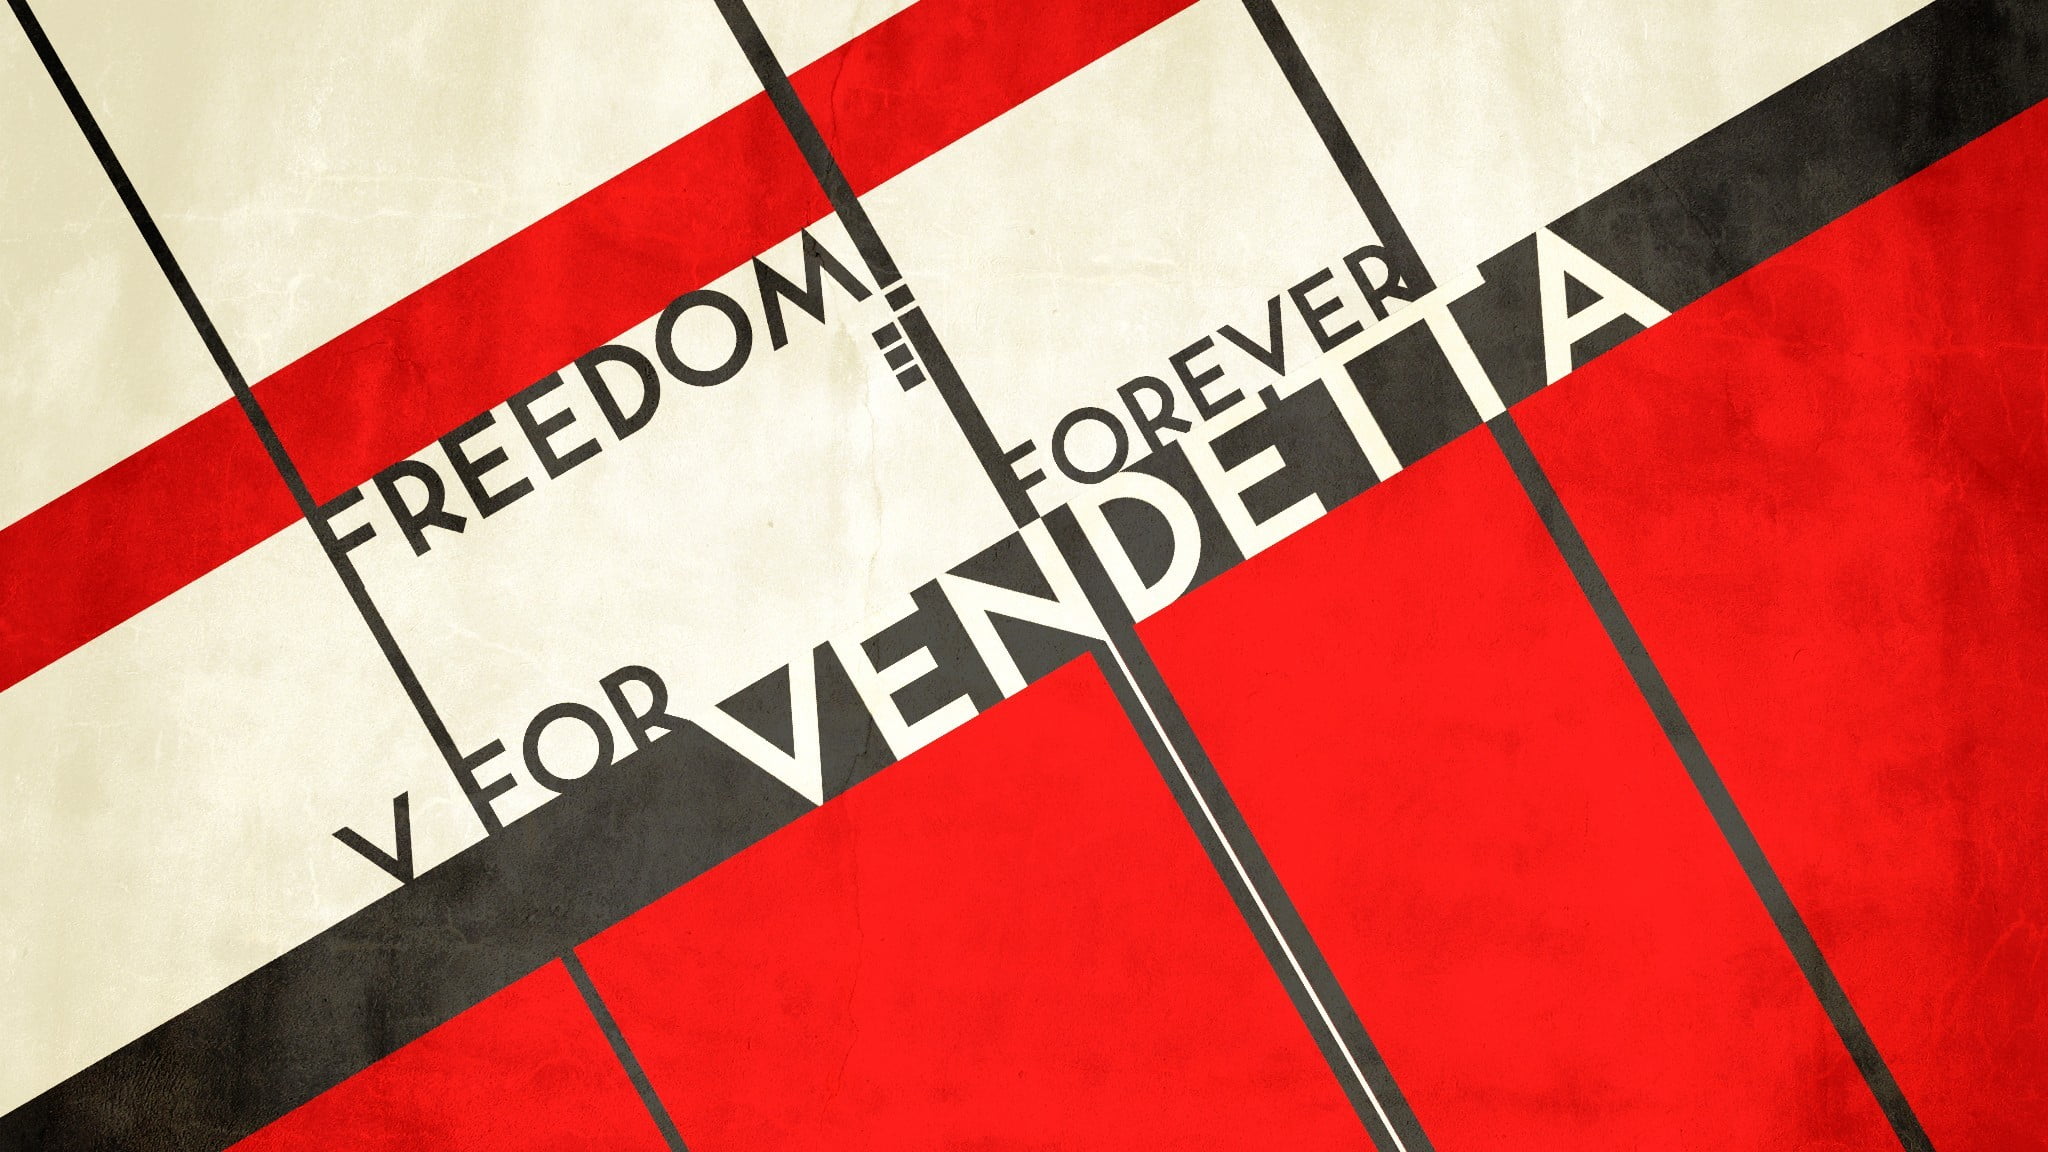 Freedom Forever V for Vendetta digital wallpaper, digital art